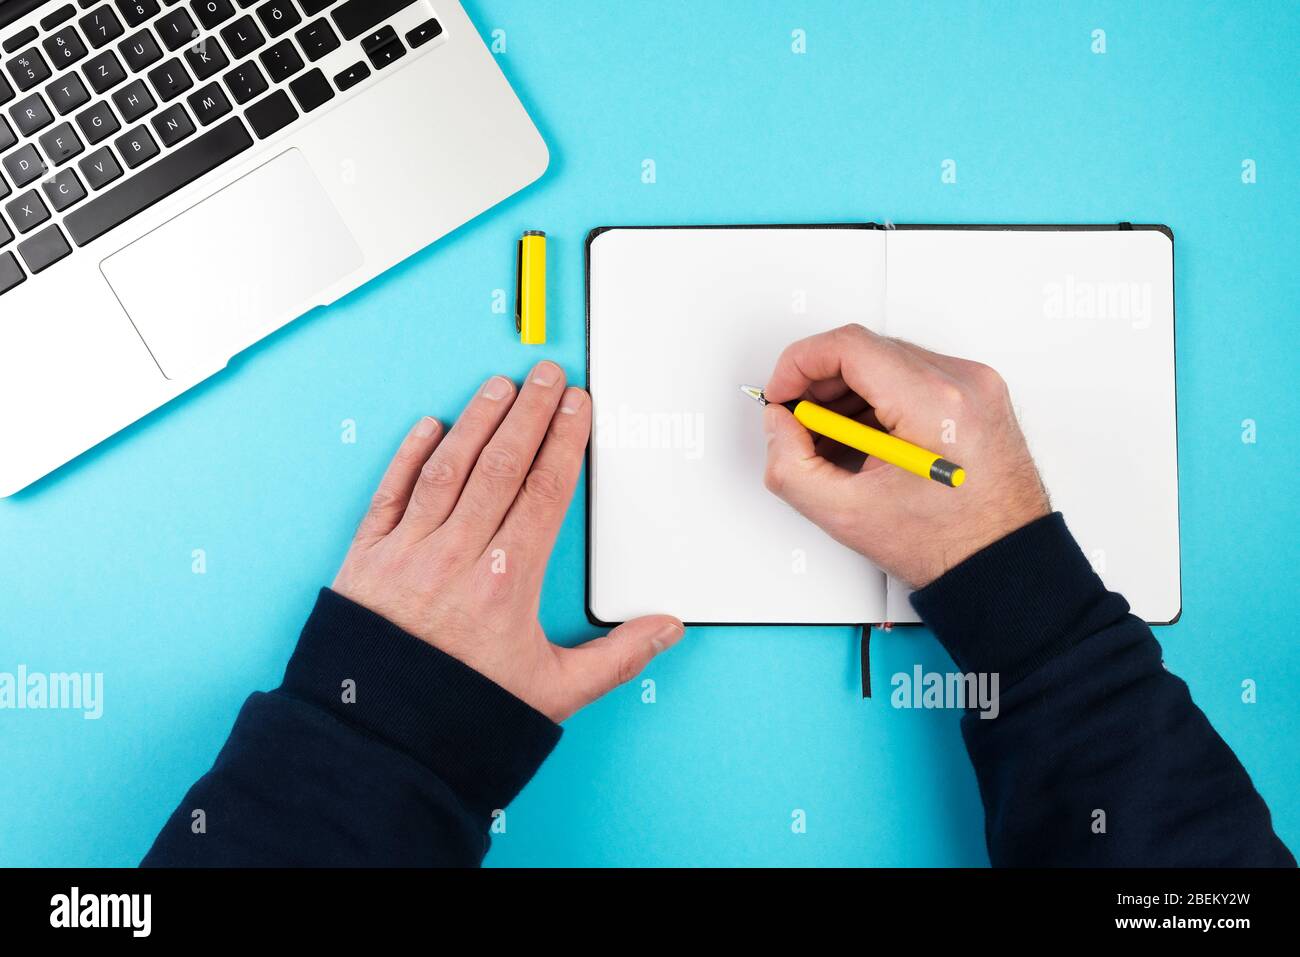 direttamente sopra lo scatto della persona che prende appunti con la penna e la carta sulla scrivania blu con computer portatile Foto Stock